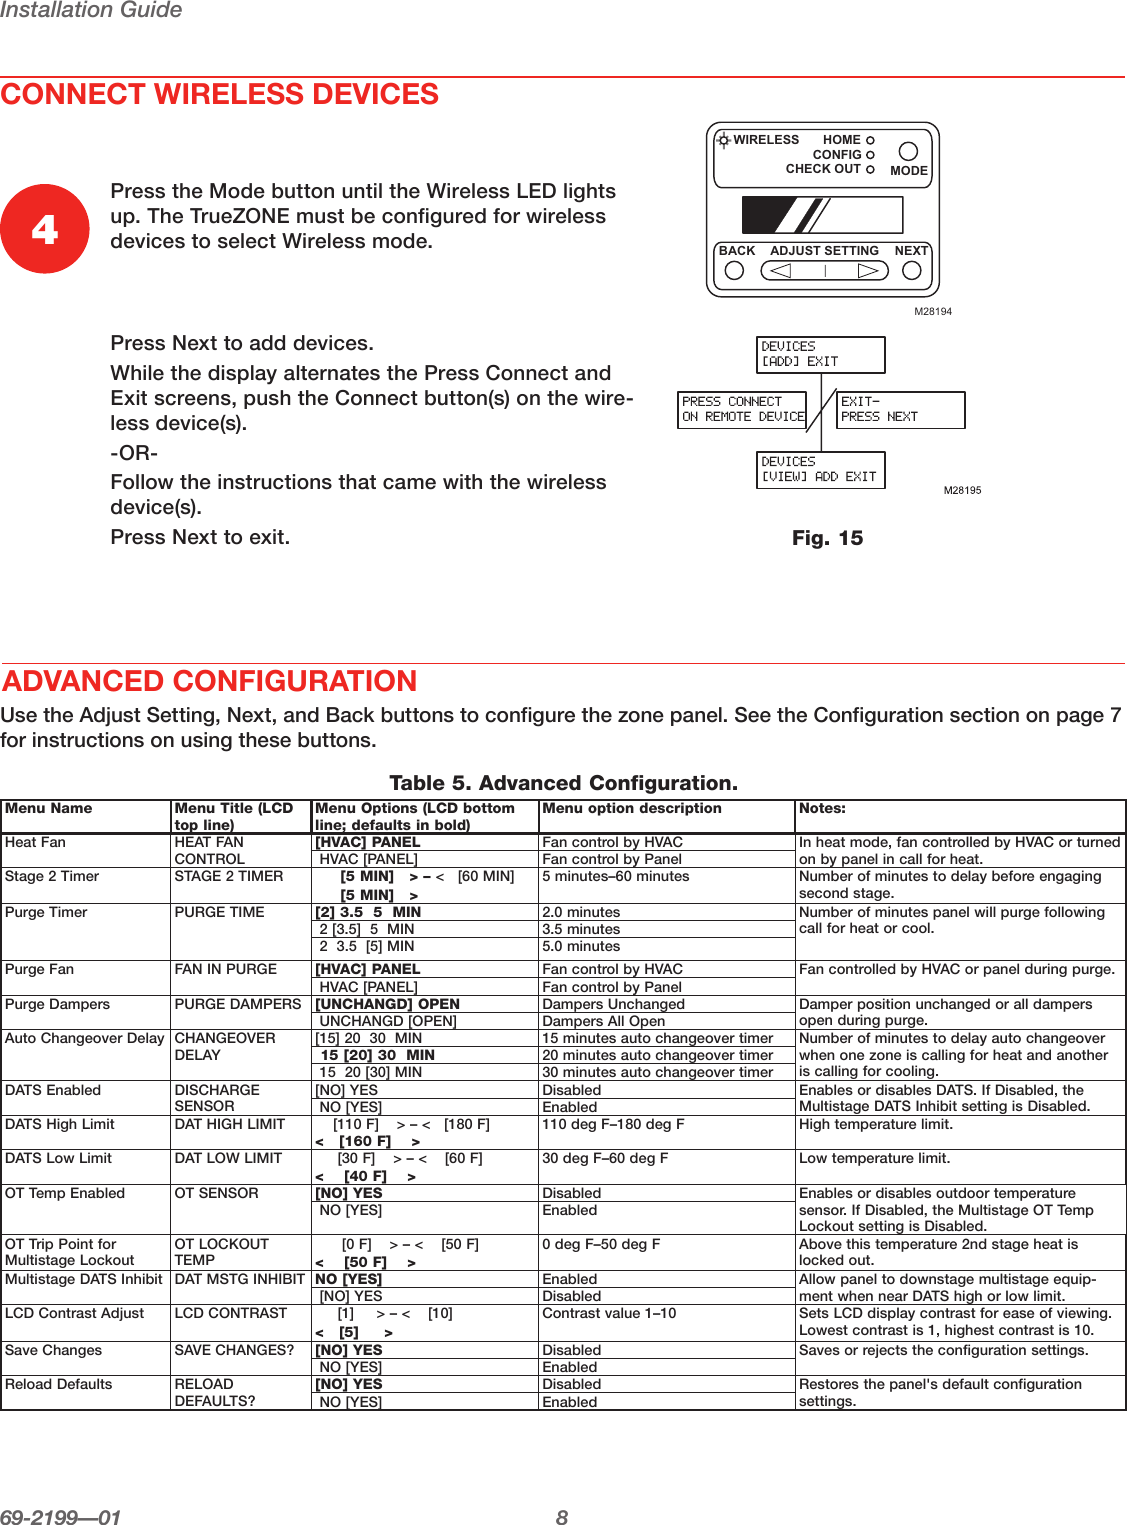 Page 10 of 12 - Honeywell Honeywell-Truezone-Hz322-Users-Manual- 69-2199-01 - HZ322 TrueZONE  Honeywell-truezone-hz322-users-manual